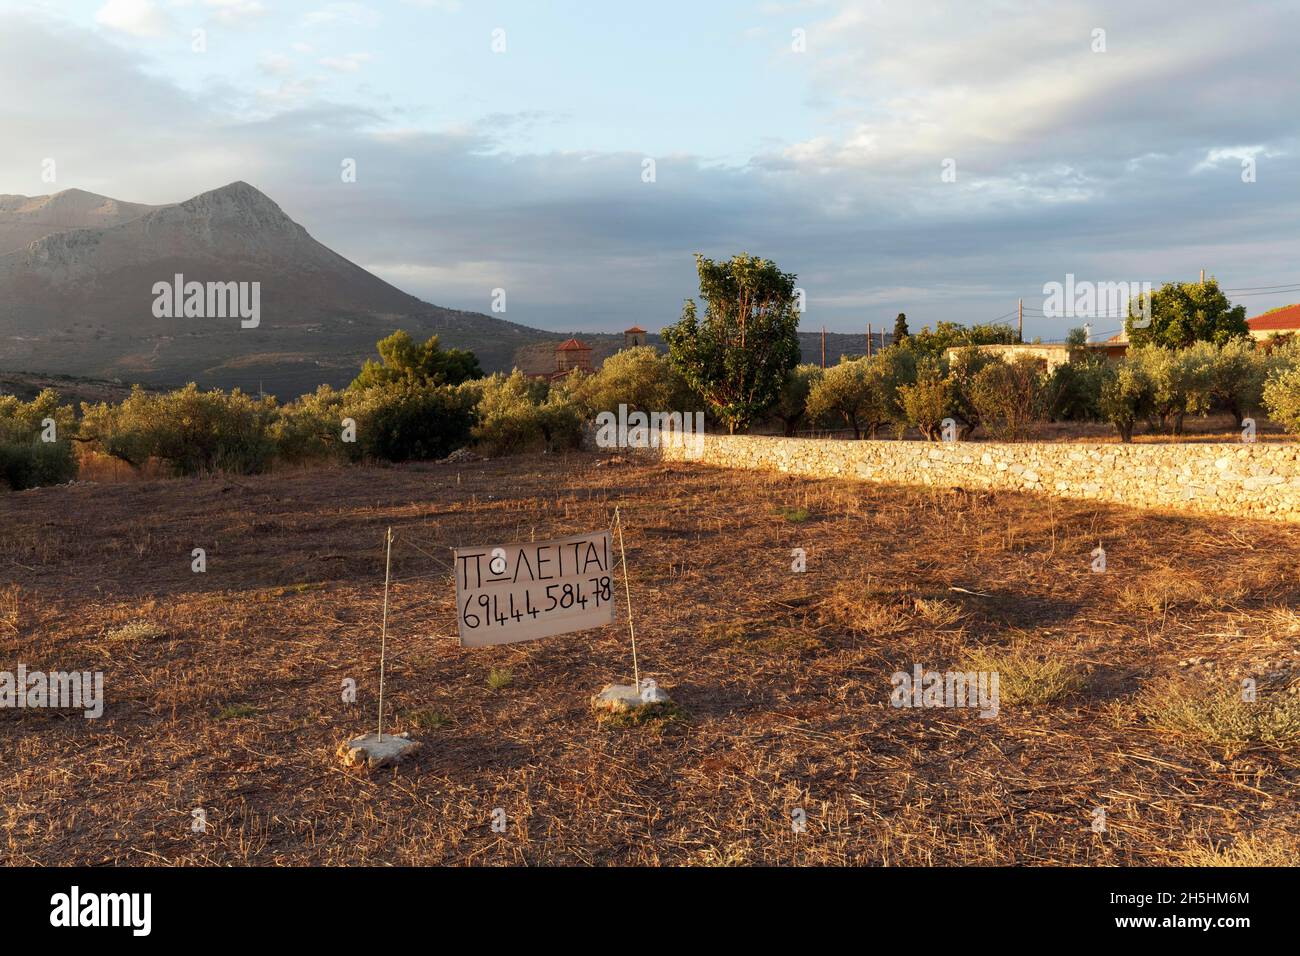 Grundstück zu verkaufen, Schild mit Telefonnummer, Morgenlicht, Itilo Dorf, Itylo, Mani Halbinsel, Lakonien, Peloponnes, Griechenland Stockfoto